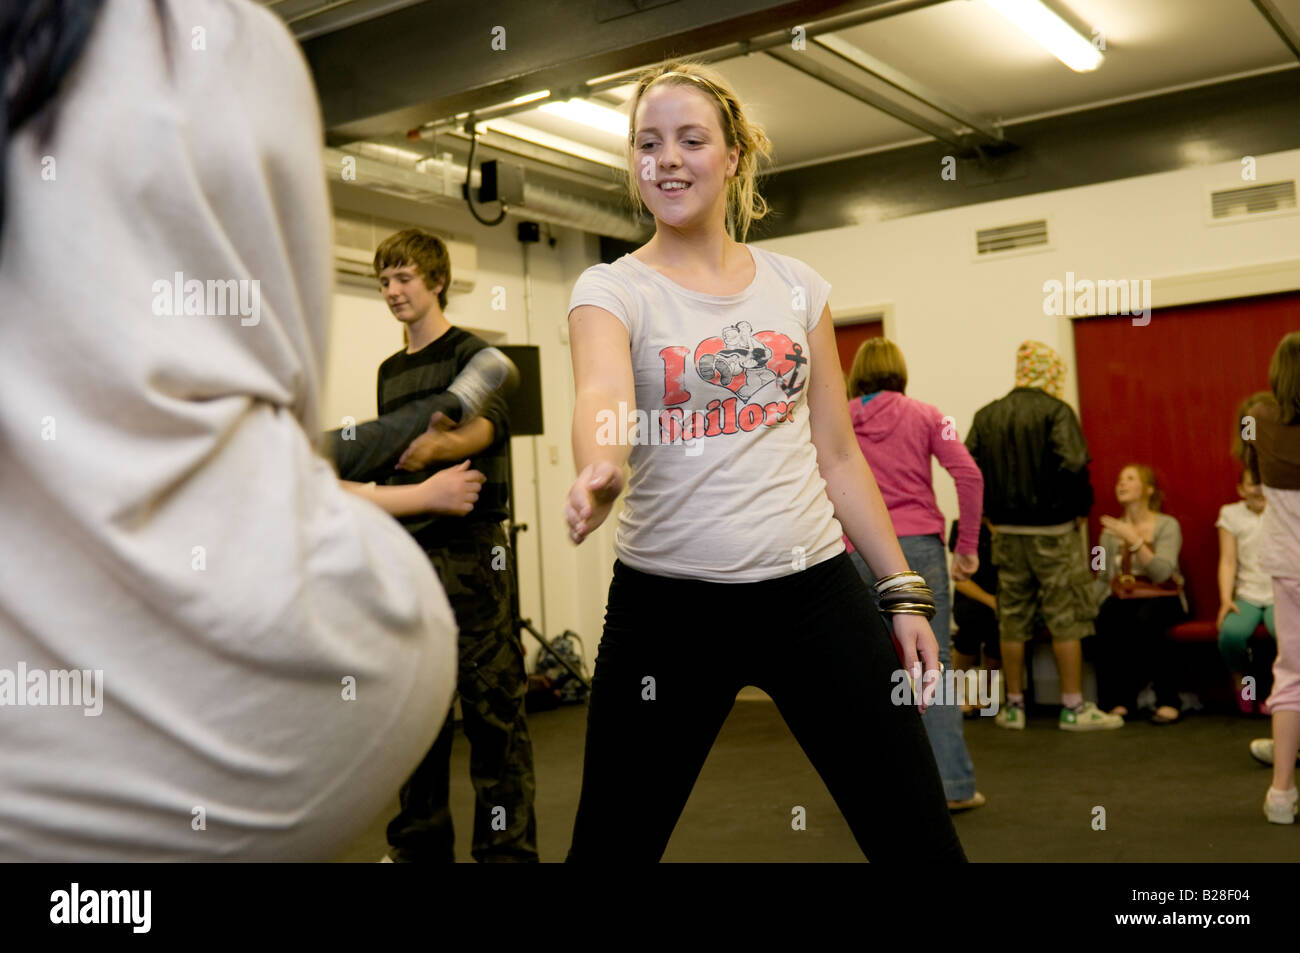 Smiling blonde teenage girl wearing leggings in a dance workshop